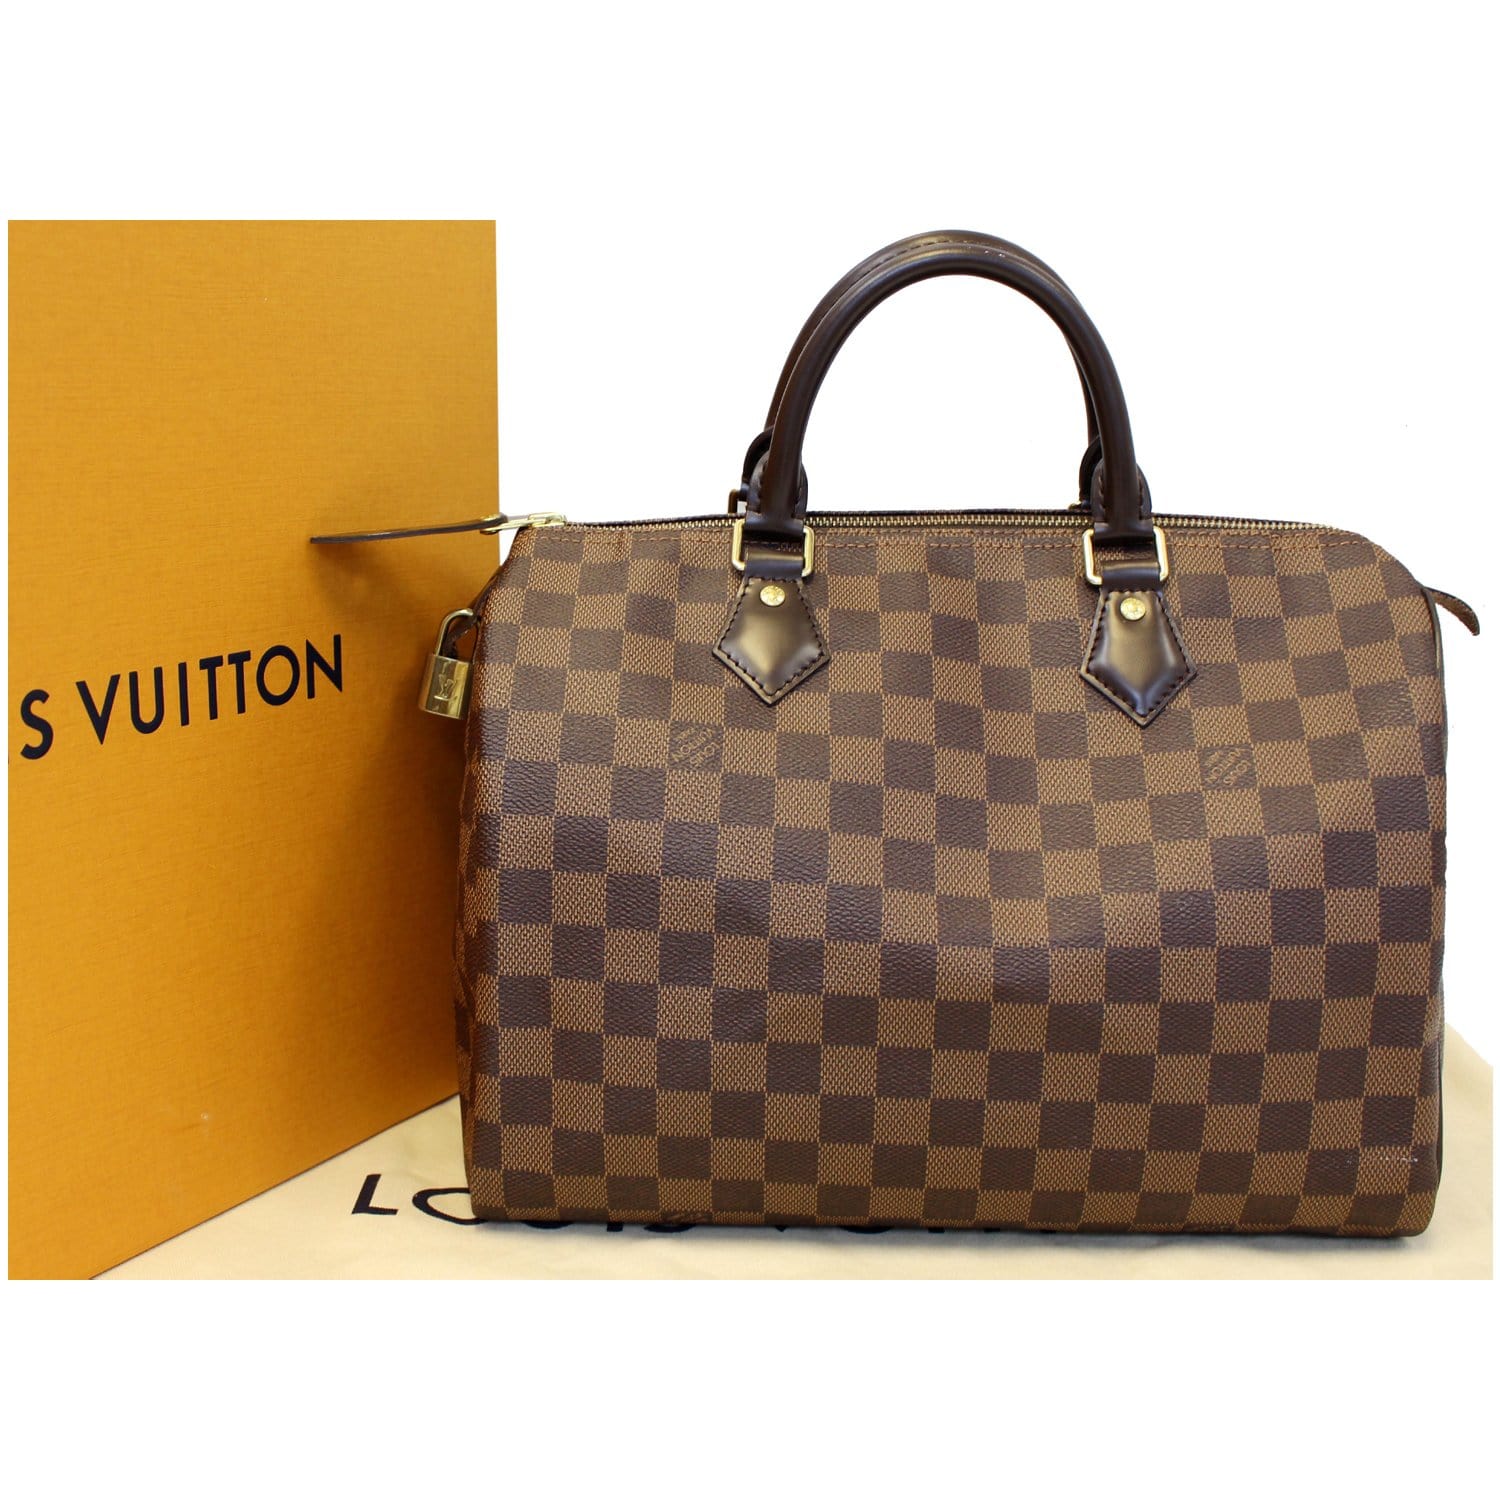 Louis Vuitton Speedy 30 Damier Ebene Satchel Bag in Brown